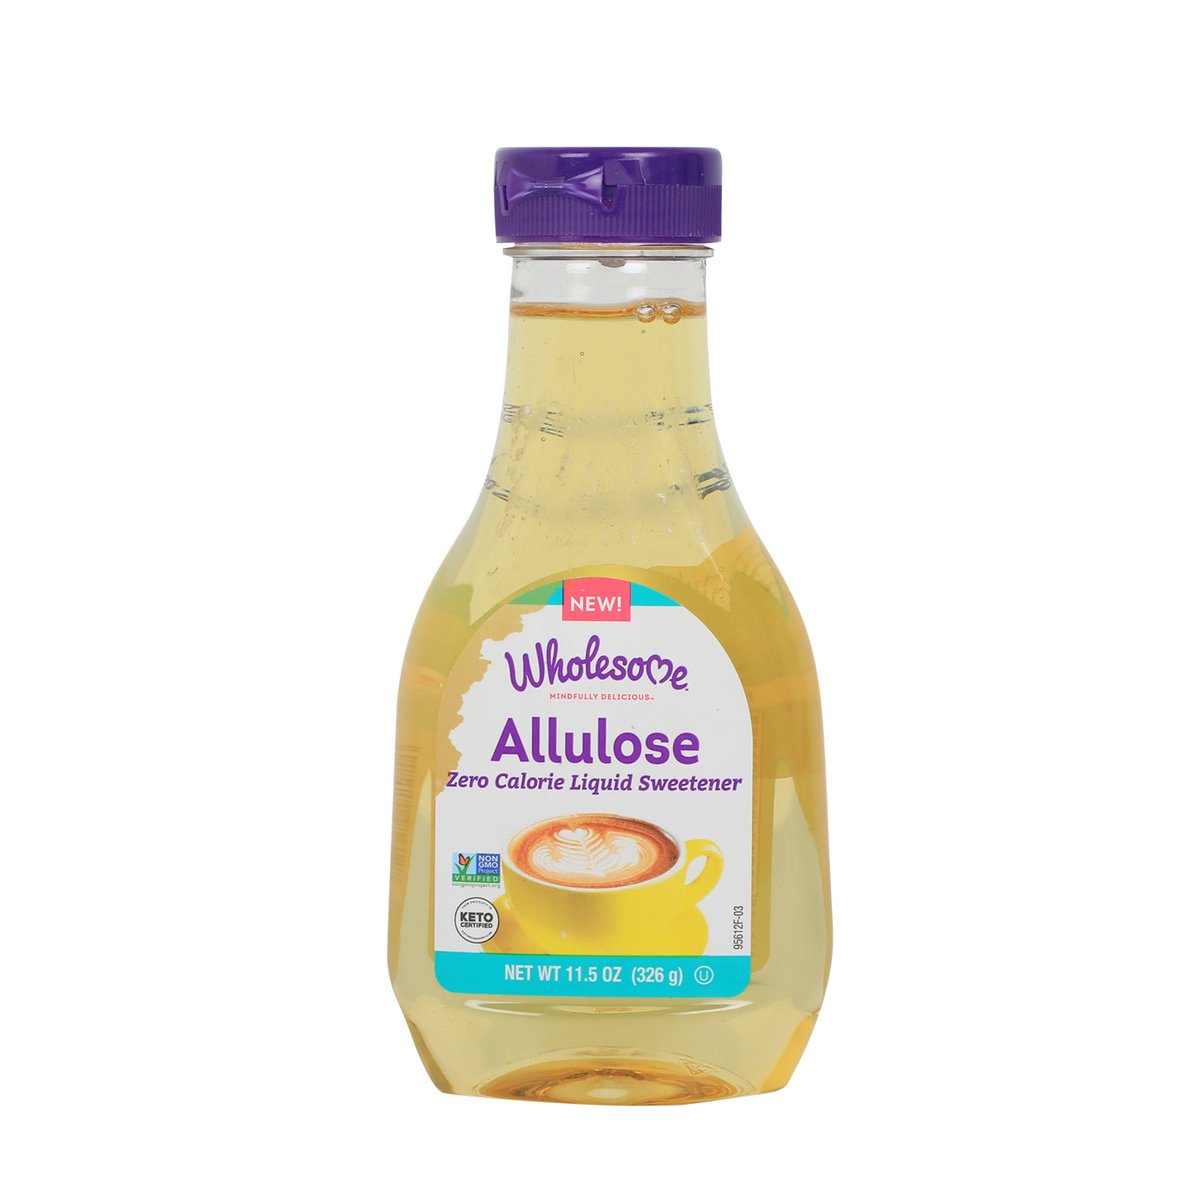 اشتري قم بشراء Wholesome Allulose Zero Calorie Liquid Sweetener 326g Online at Best Price من الموقع - من لولو هايبر ماركت Sugar في الكويت